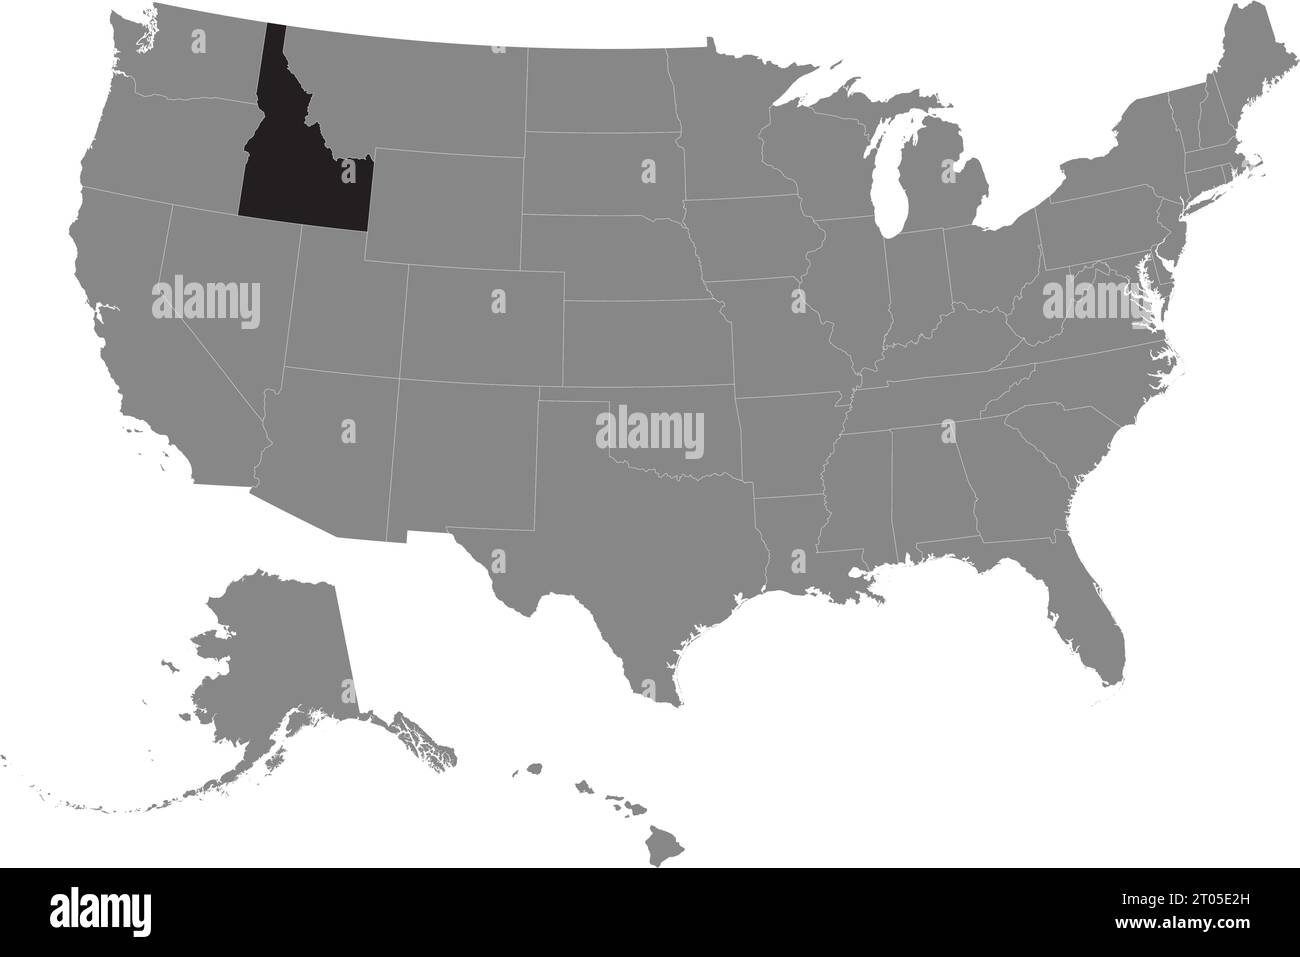 Schwarze CMYK-Bundeskarte von IDAHO in detaillierter grauer, leerer politischer Karte der Vereinigten Staaten von Amerika auf transparentem Hintergrund Stock Vektor